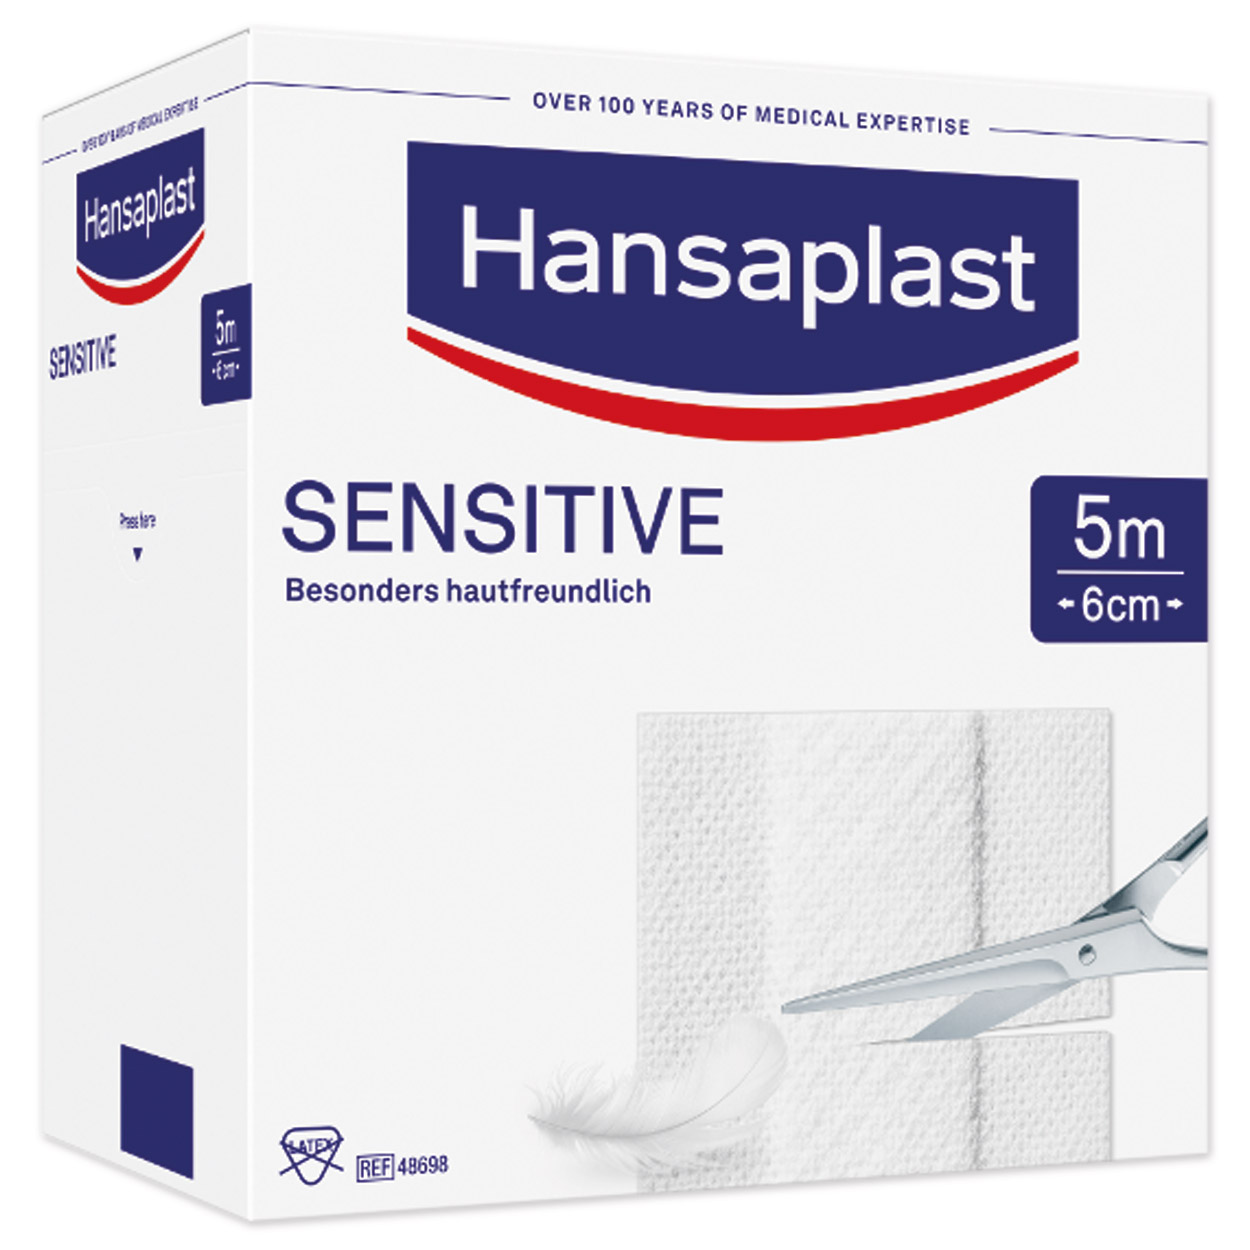 Hansaplast Sensitive Wundpflaster 5 m x 6 cm, weiß